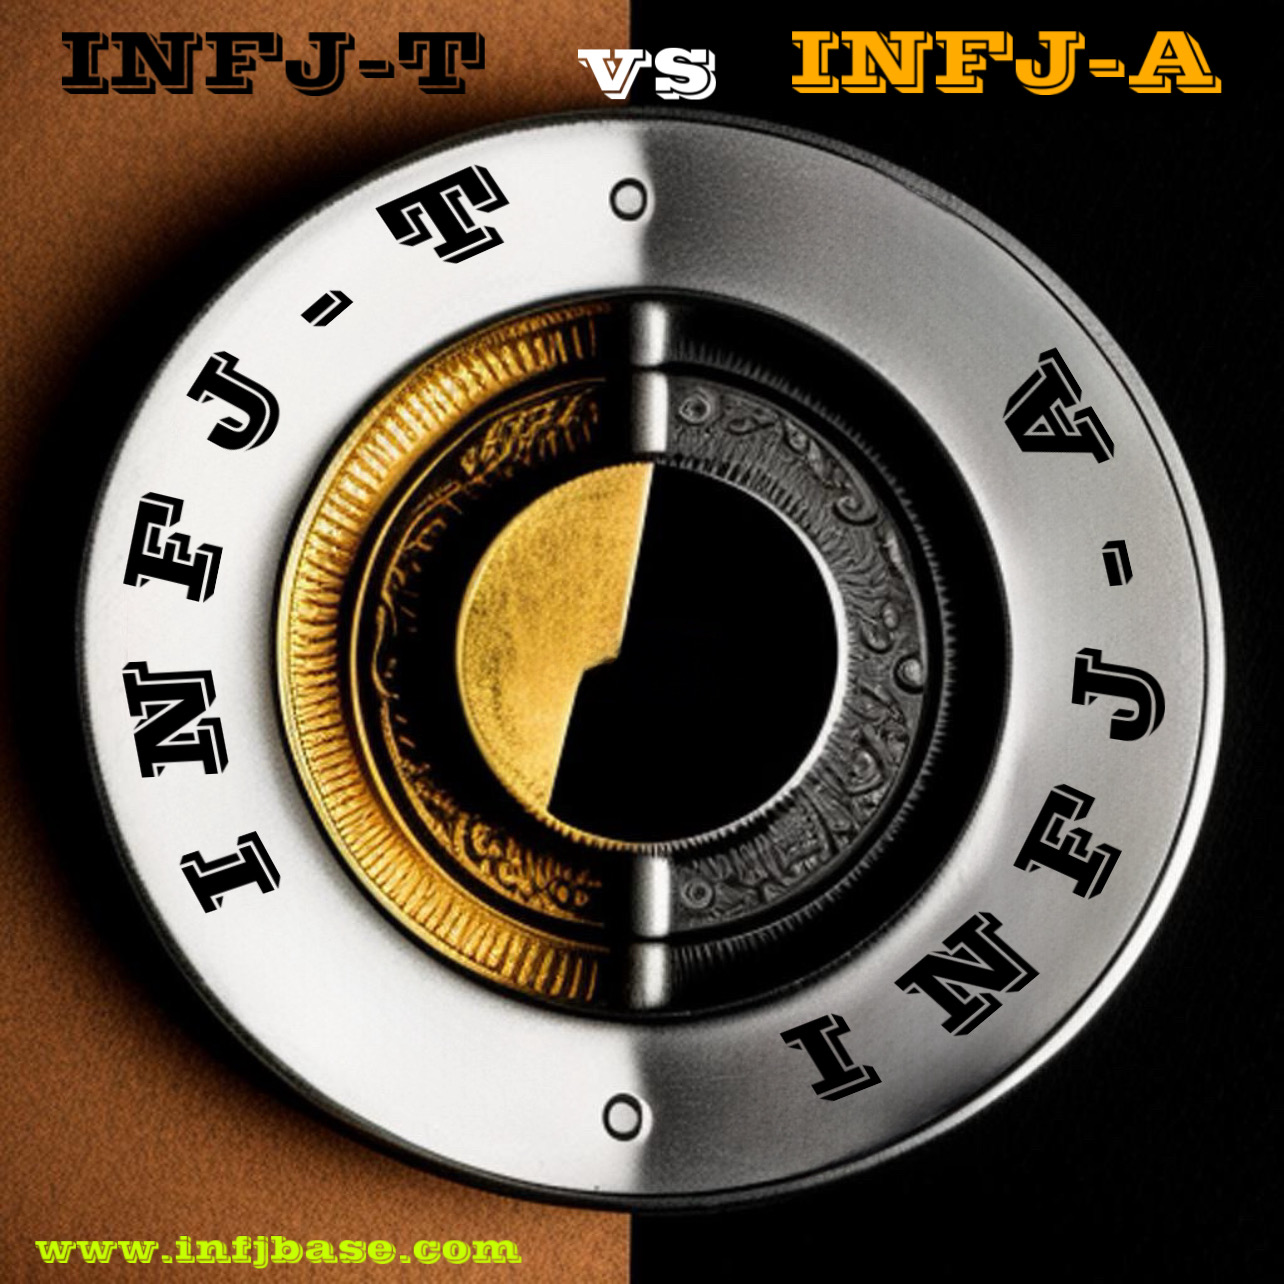 INFJ-T vs INFJ-A